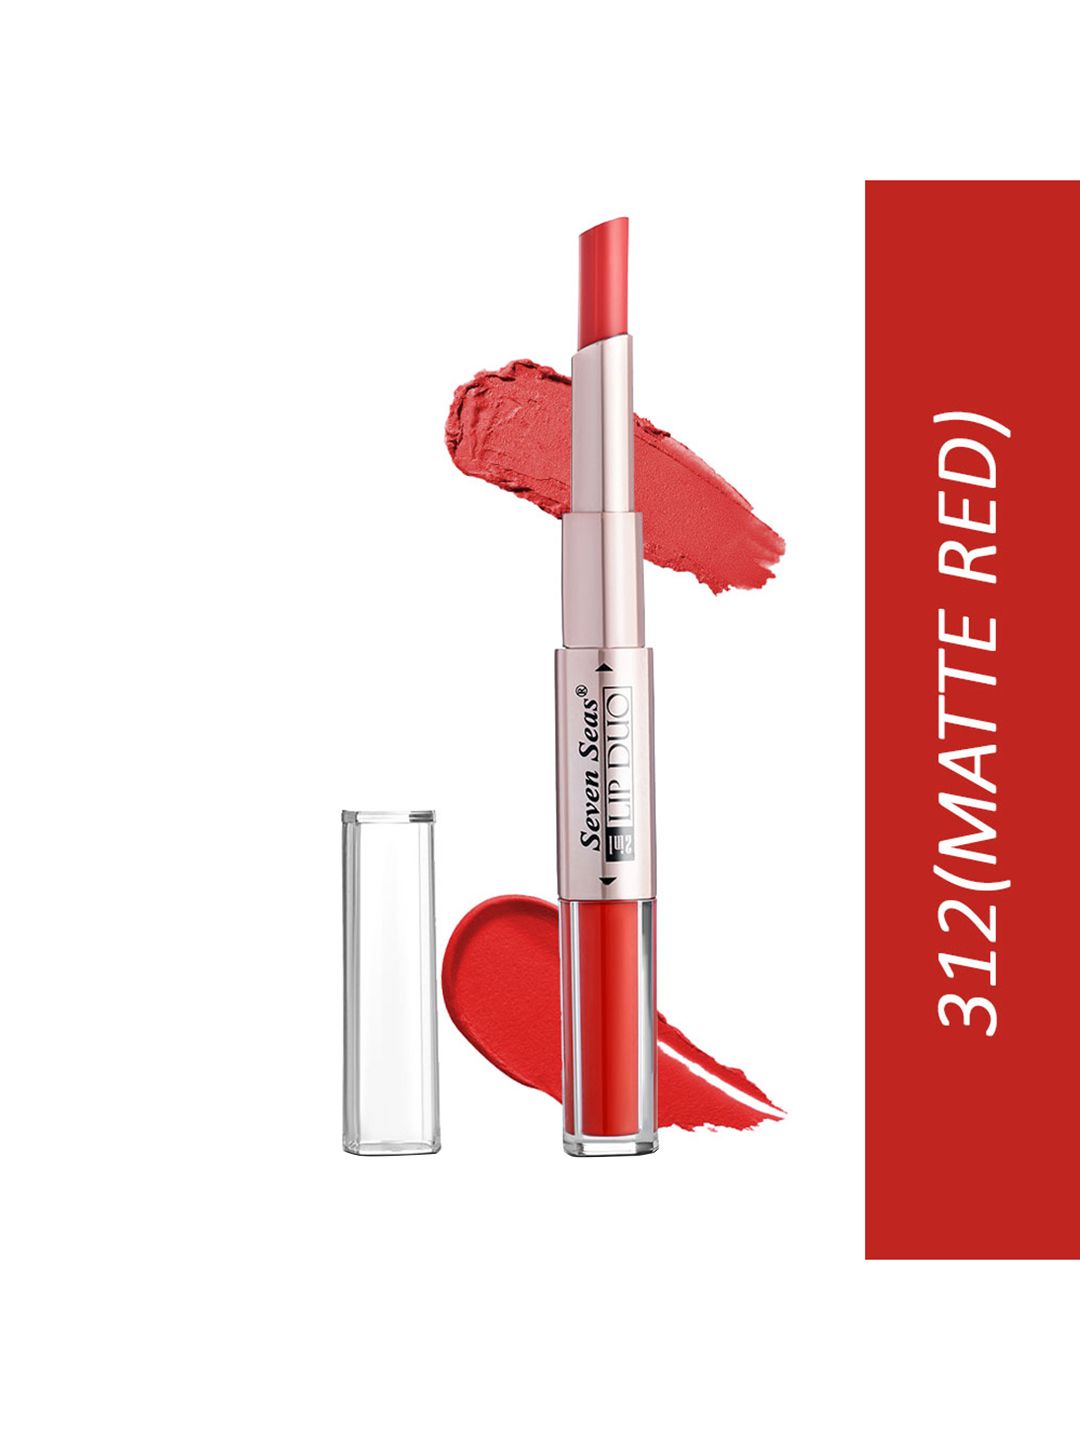 Seven Seas Lip Duo 2 In 1 Liquid Lipstick With Stick Lipstick-312 Matte Red Price in India